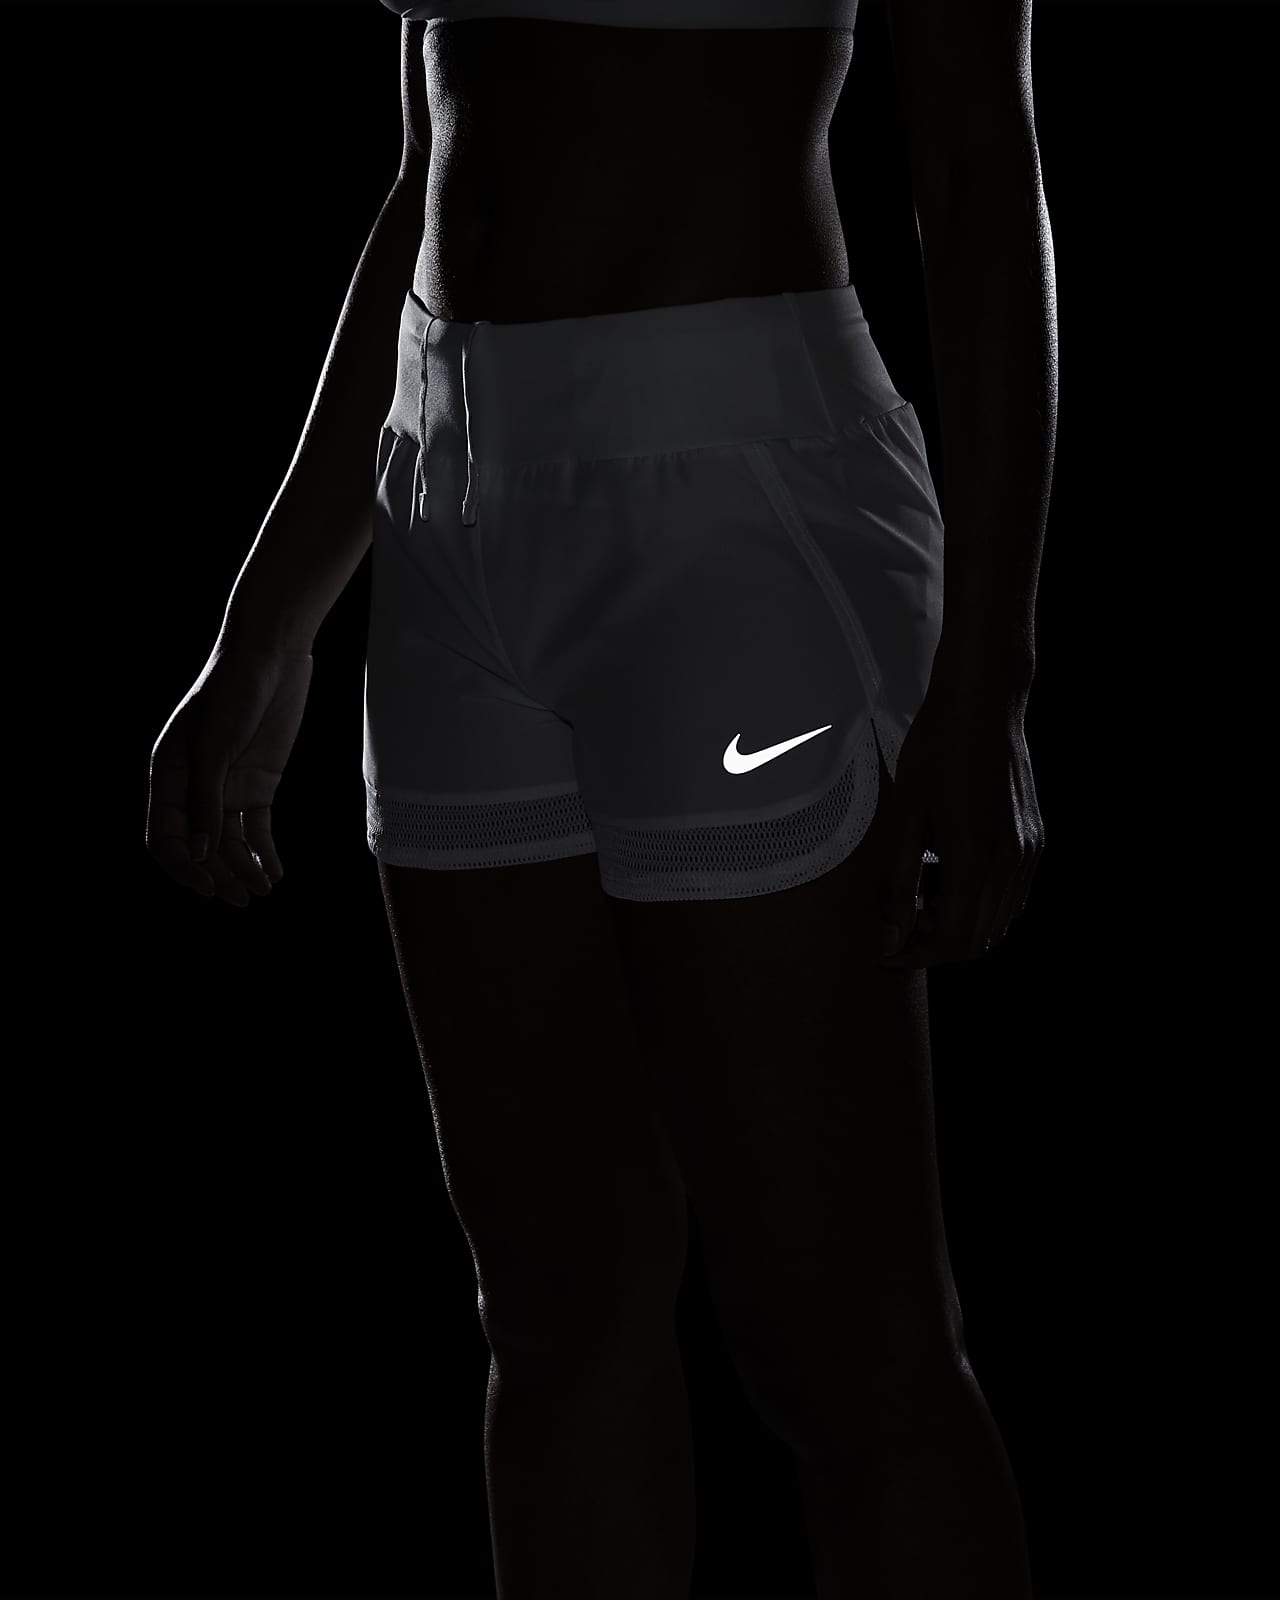 Nike Dri-FIT Running Shorts.